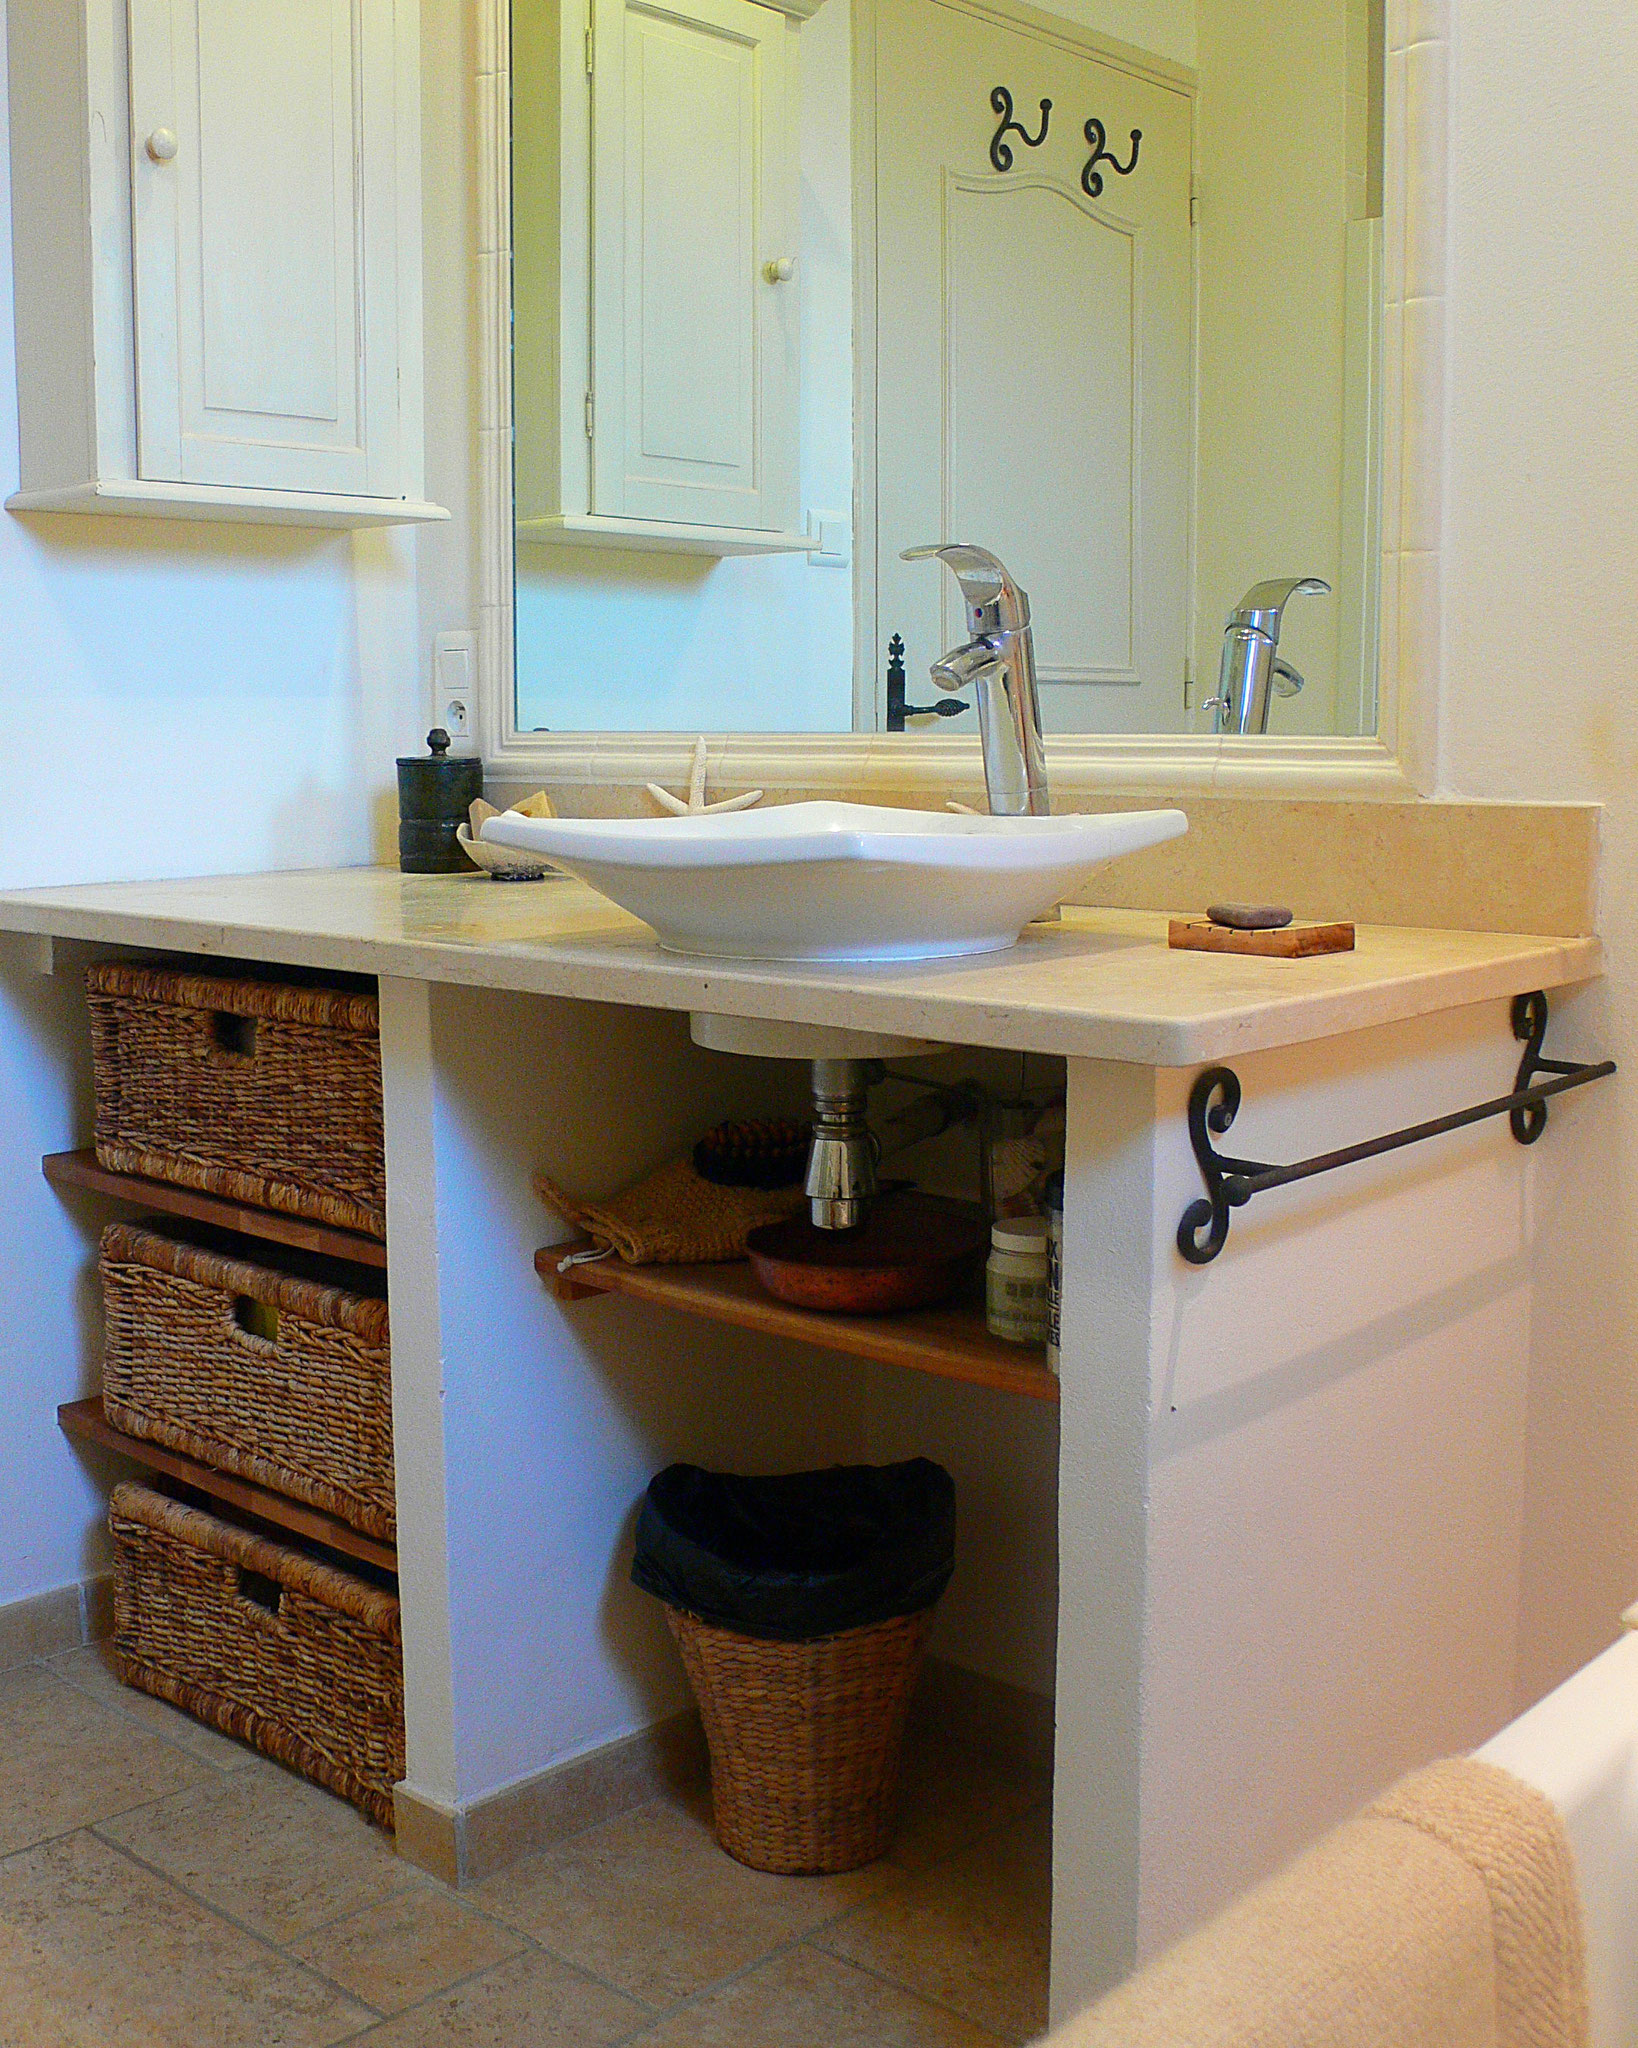 Salle de bain intemporelle en blanc et beige. Meuble vasque maçonné sur mesure avec tiroirs en rotin tressé et étagères en chêne, plan en pierre naturelle vieillie.